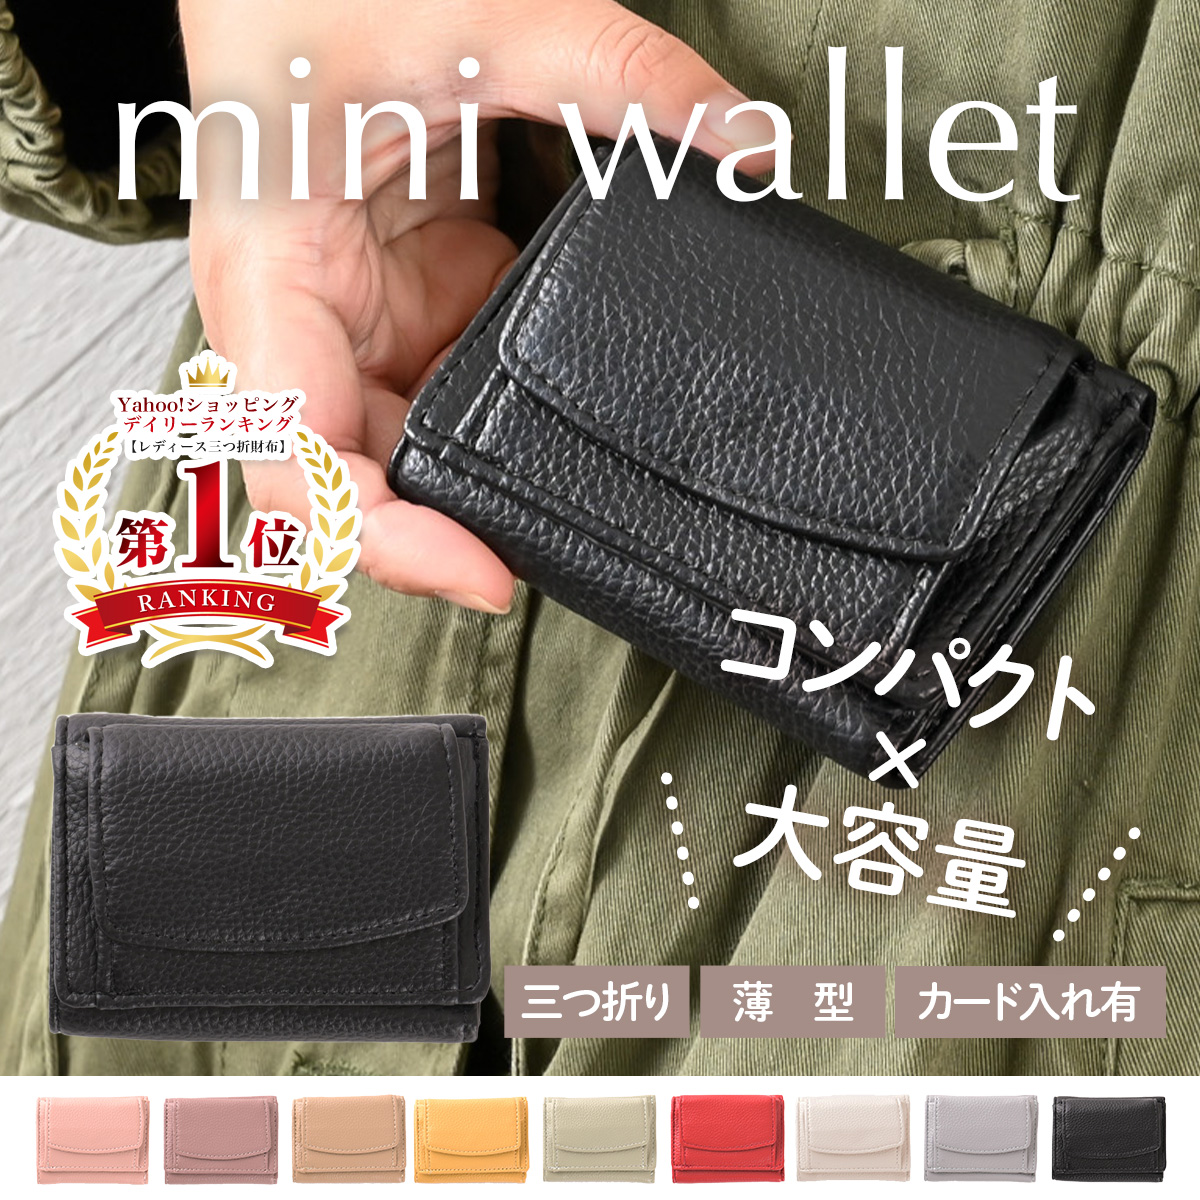 ミニ財布 財布 レディース ミニウォレット 三つ折り コンパクト 小さい 